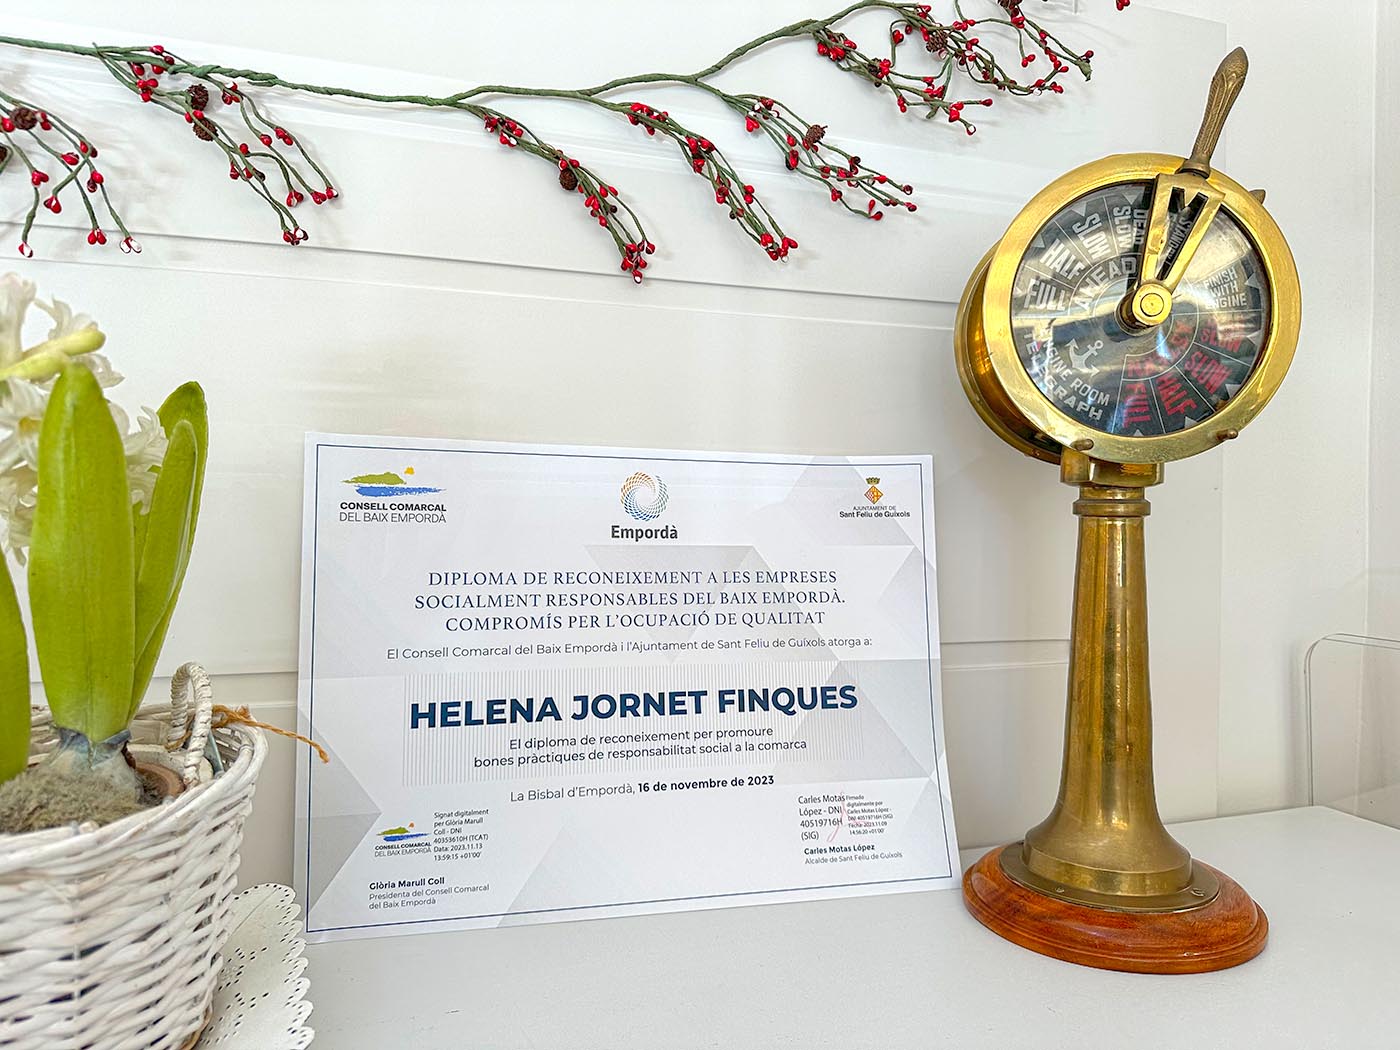 Reconeixement a Helena Jornet Finques com a Empresa socialment responsable